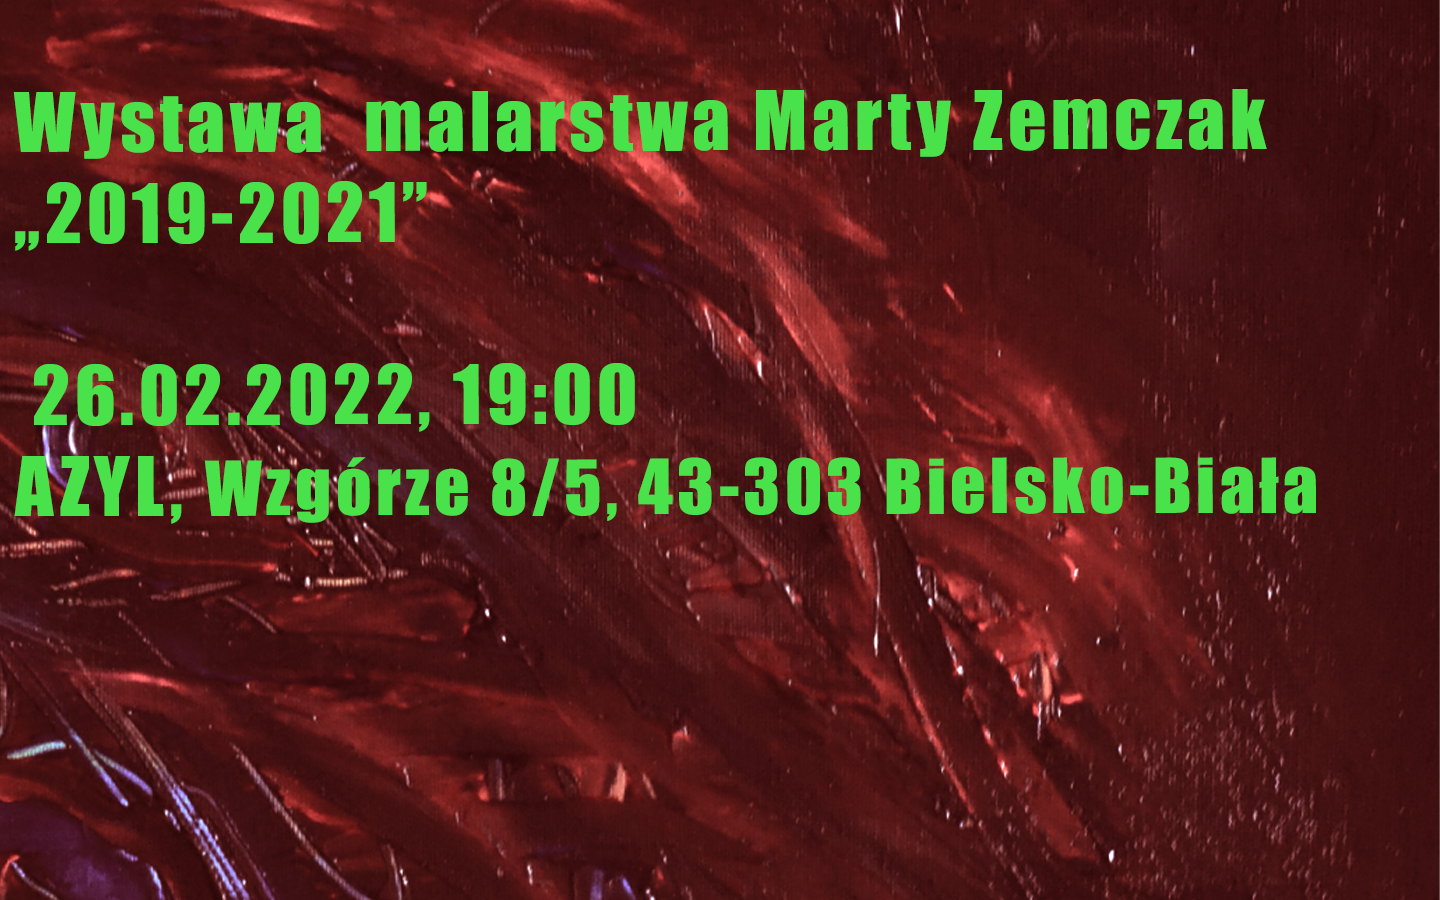  Marta Zemczak: 2019-2021 Na zdjęciu plakat imprezy